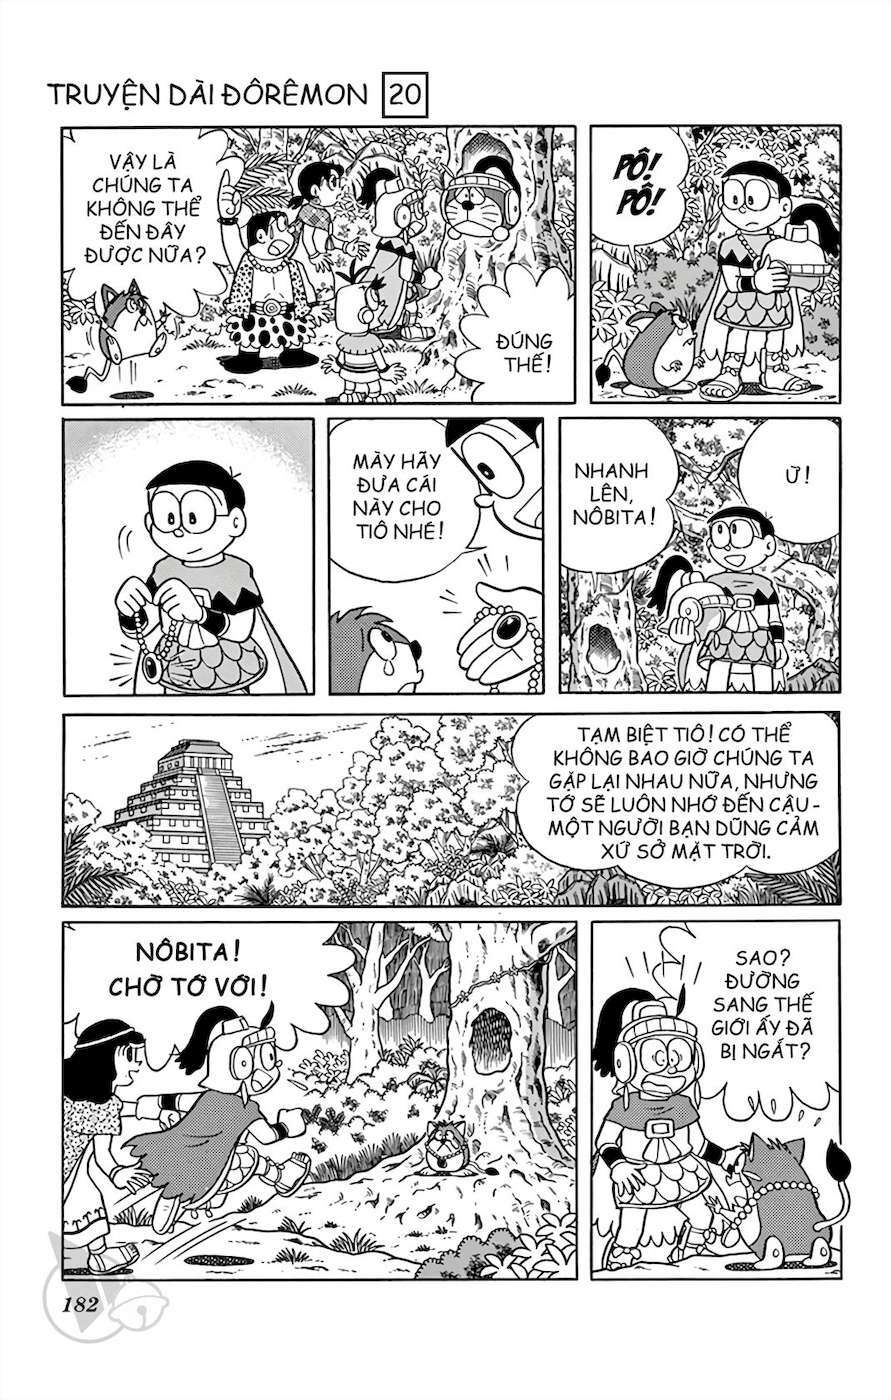 Truyện Tranh Doraemon: Truyền Thuyết Về Vua Mặt Trời Nôbita trang 181